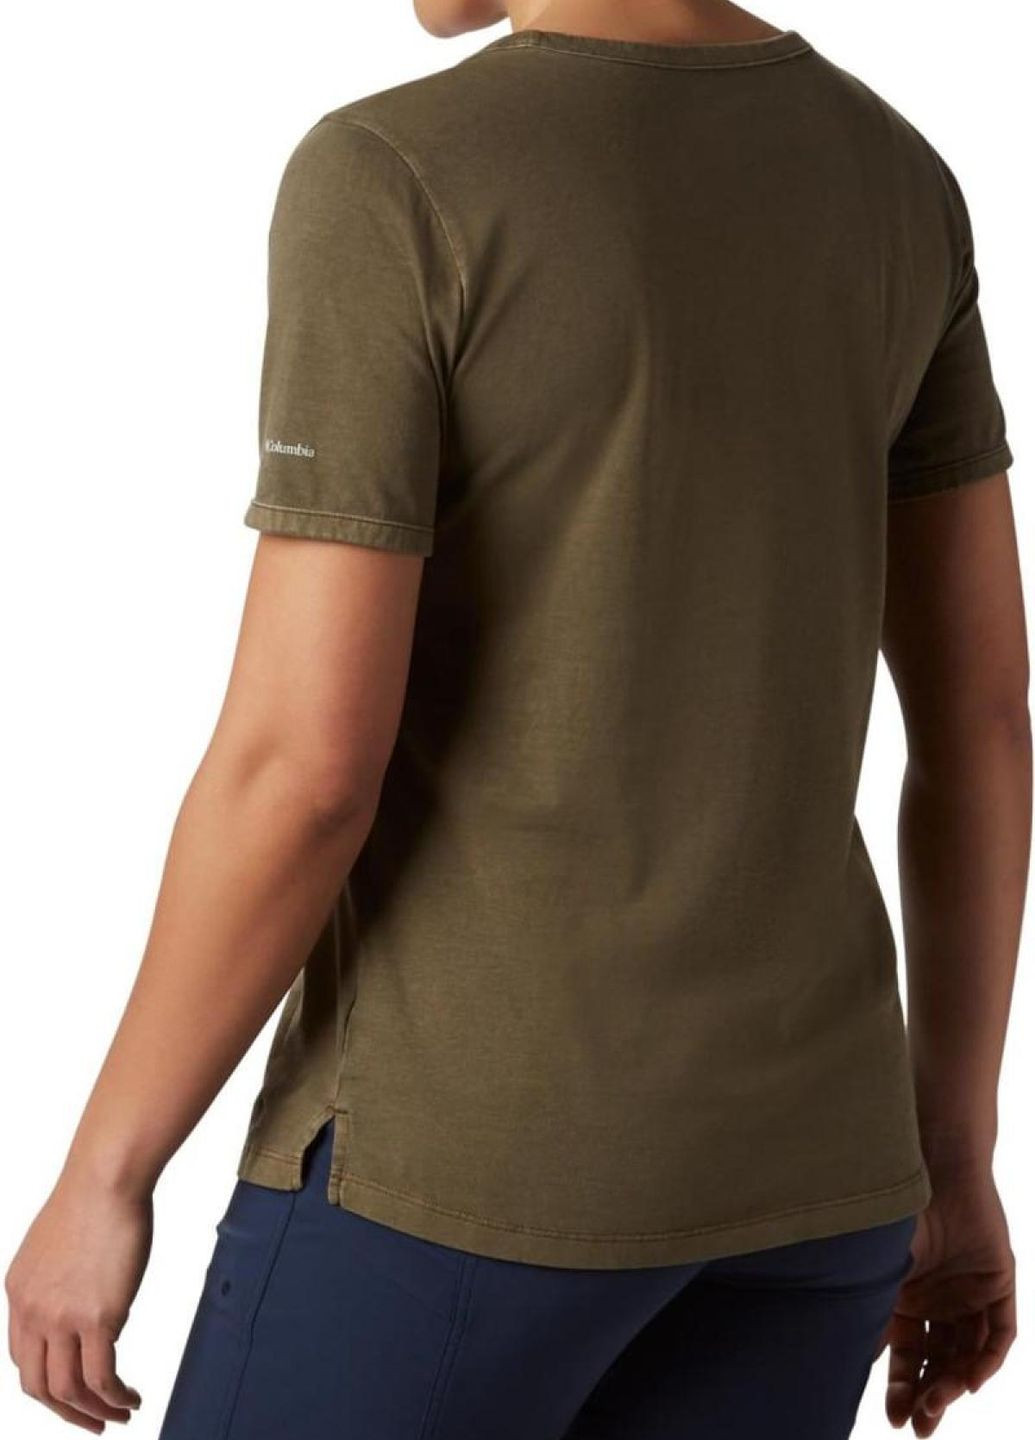 Хаки (оливковая) футболка Columbia